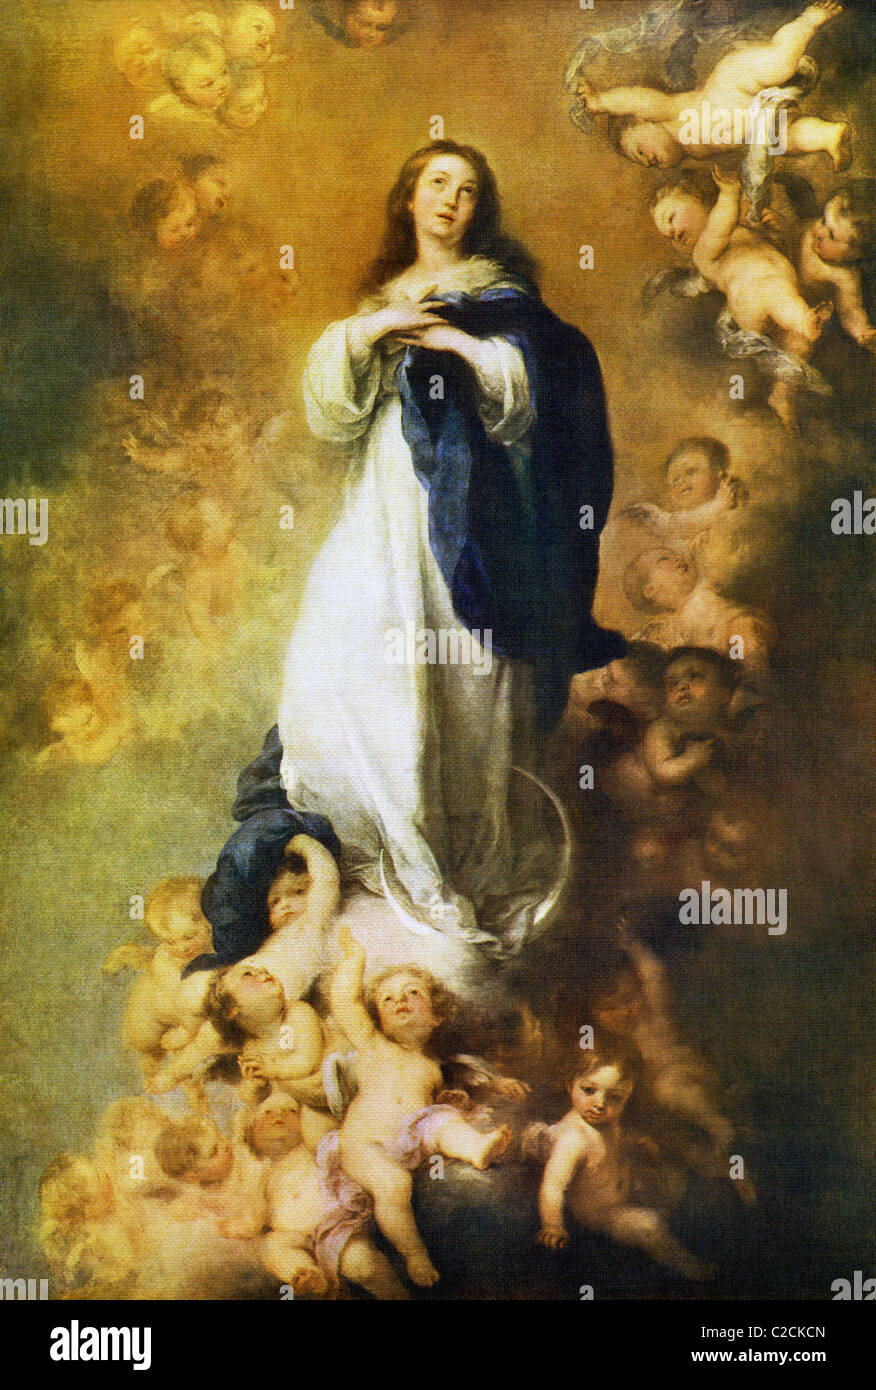 Barocco spagnolo pittore Bartolomé Esteban Murillo dipinto questo Immacolata Concezione della Vergine. Foto Stock